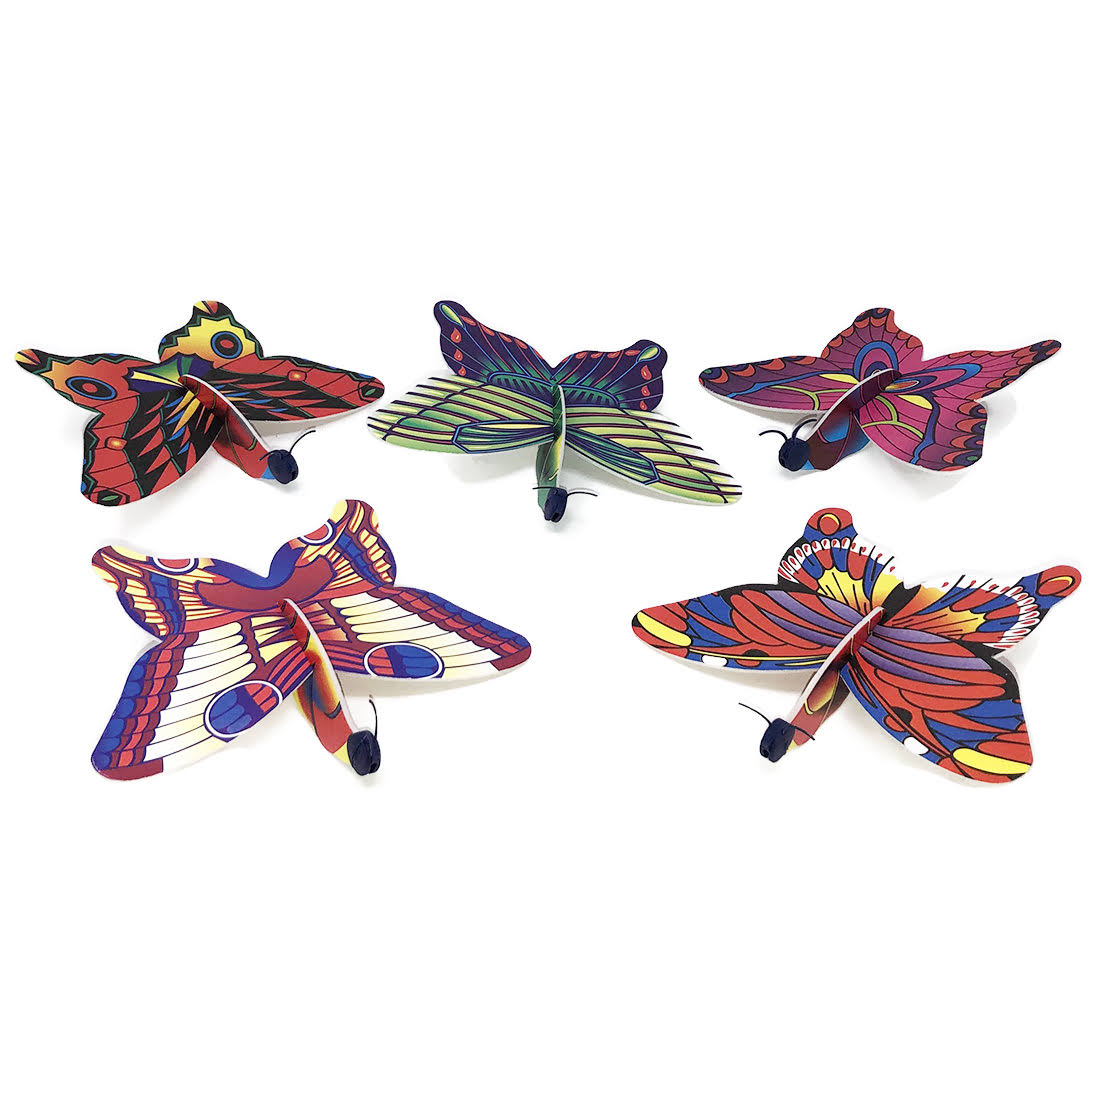 Rhode Island Novelty Butterfly Foam Gliders